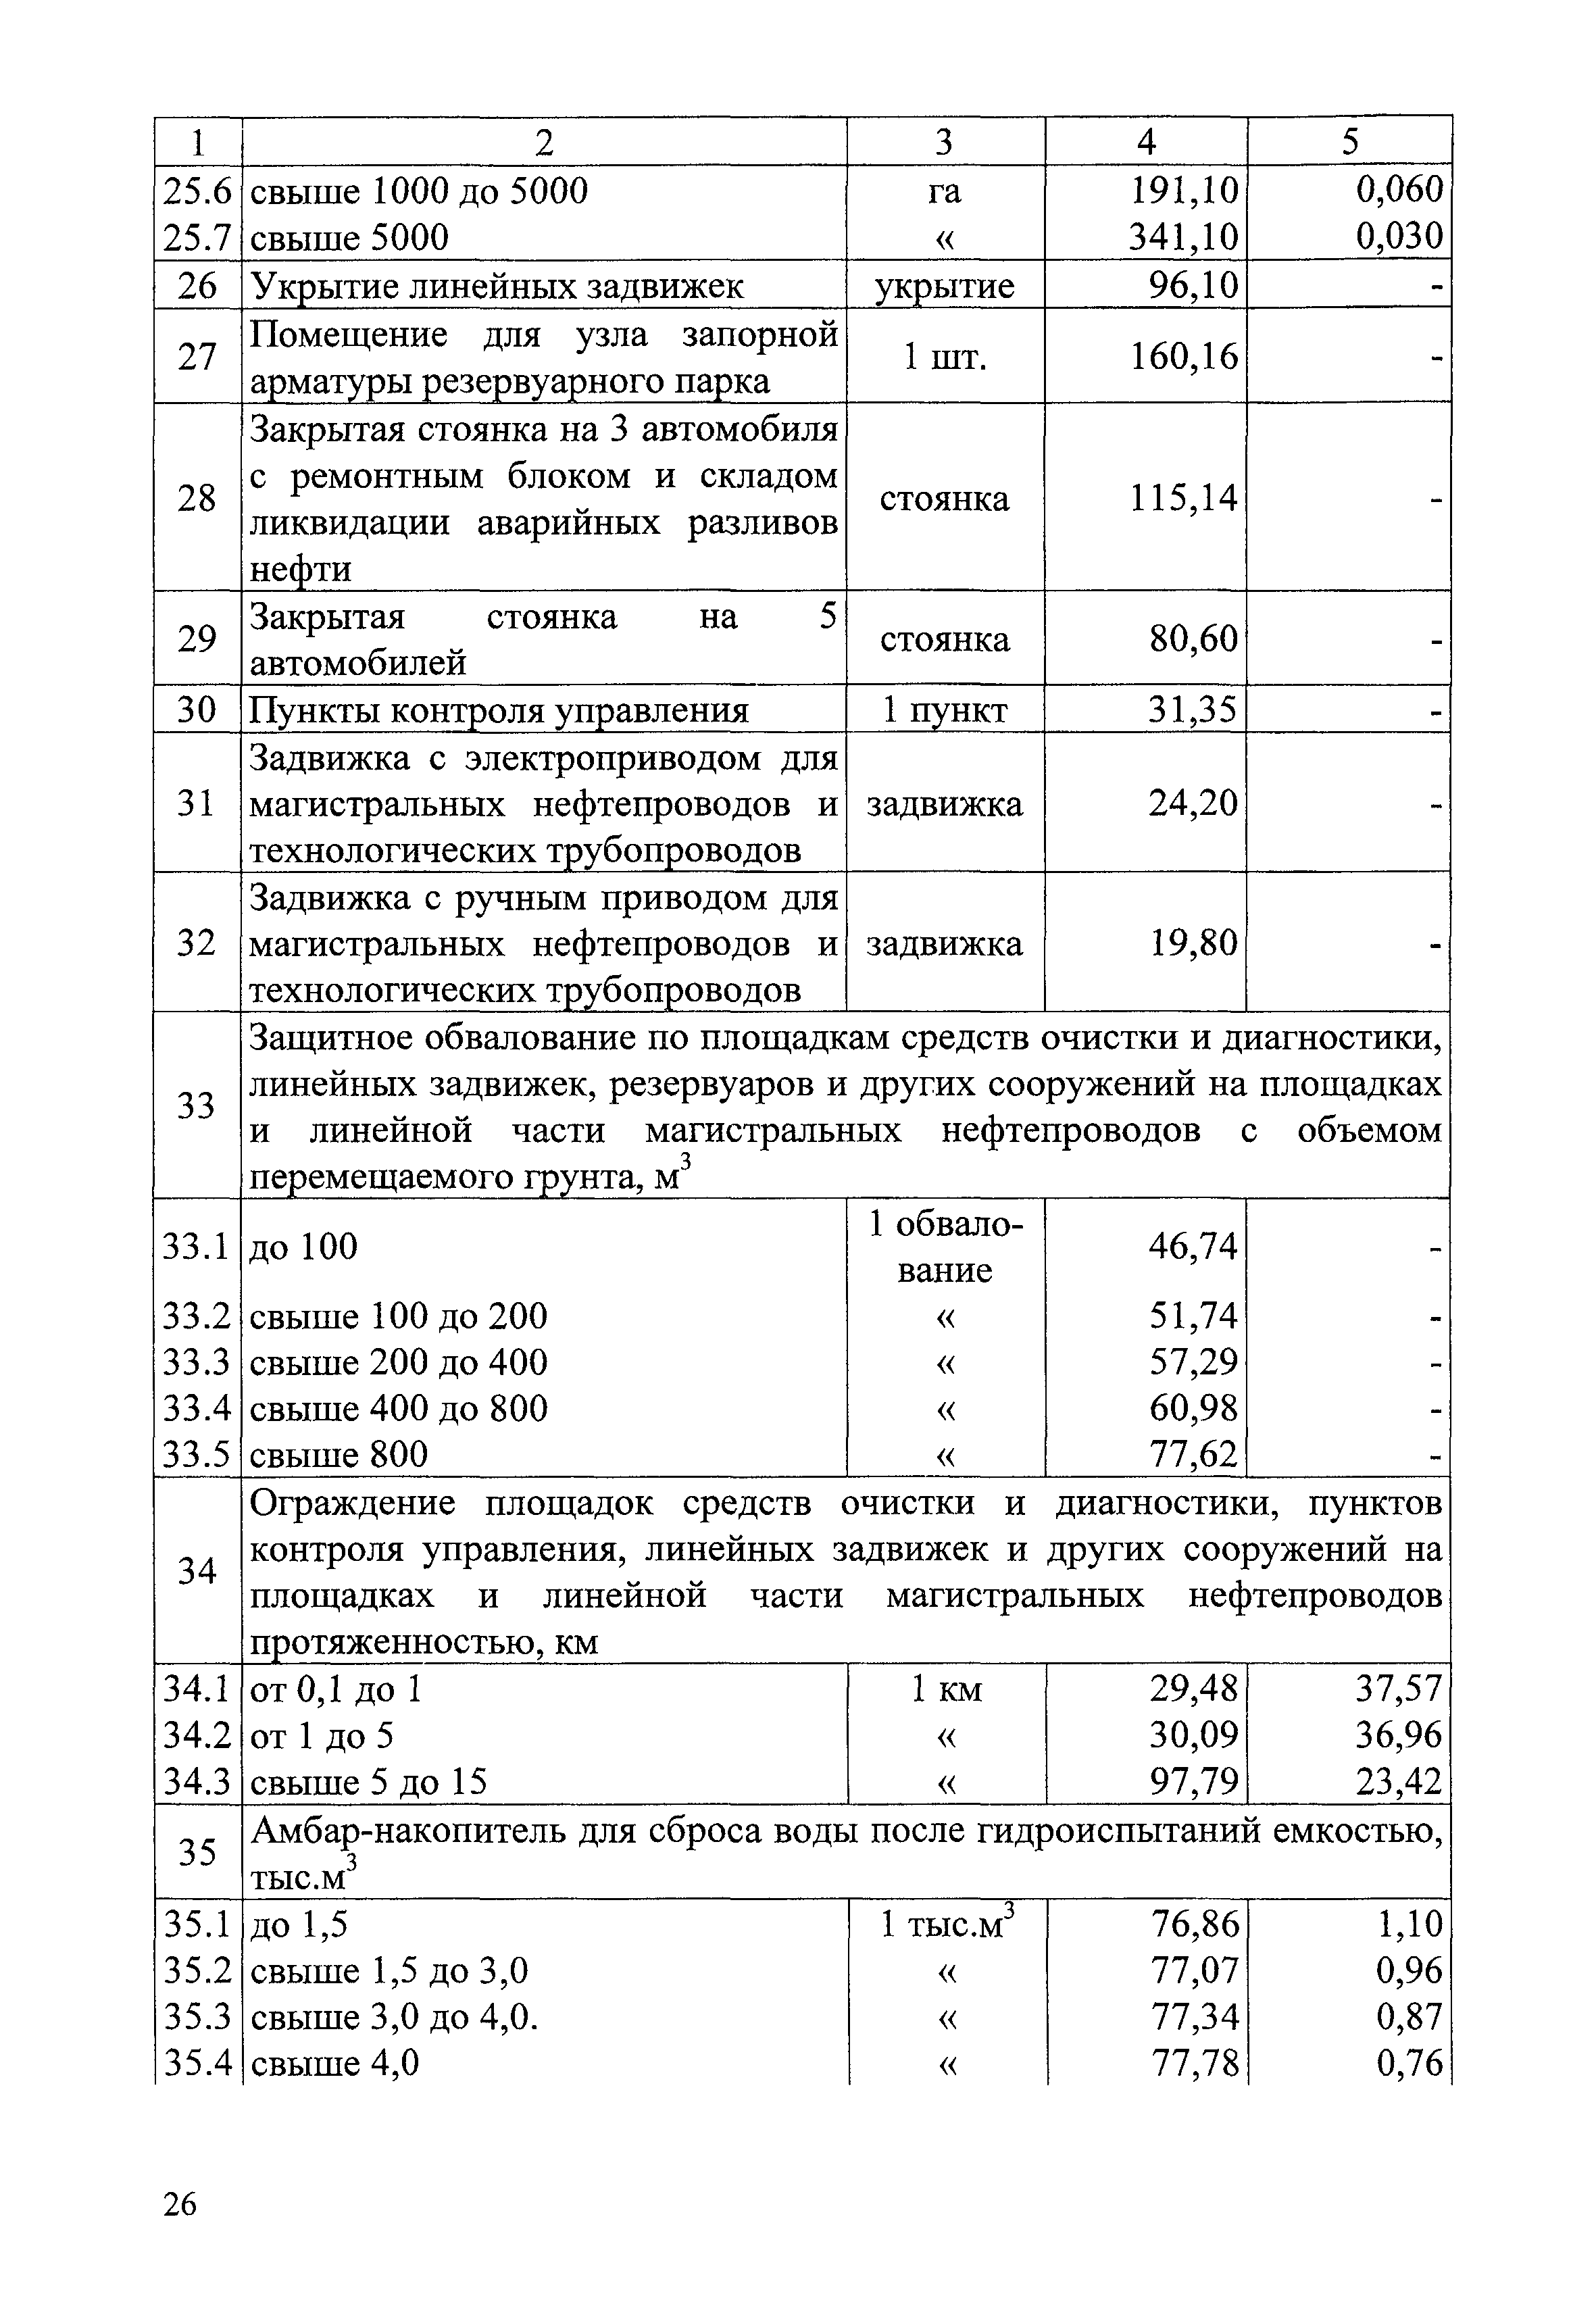 СБЦП 81-2001-08